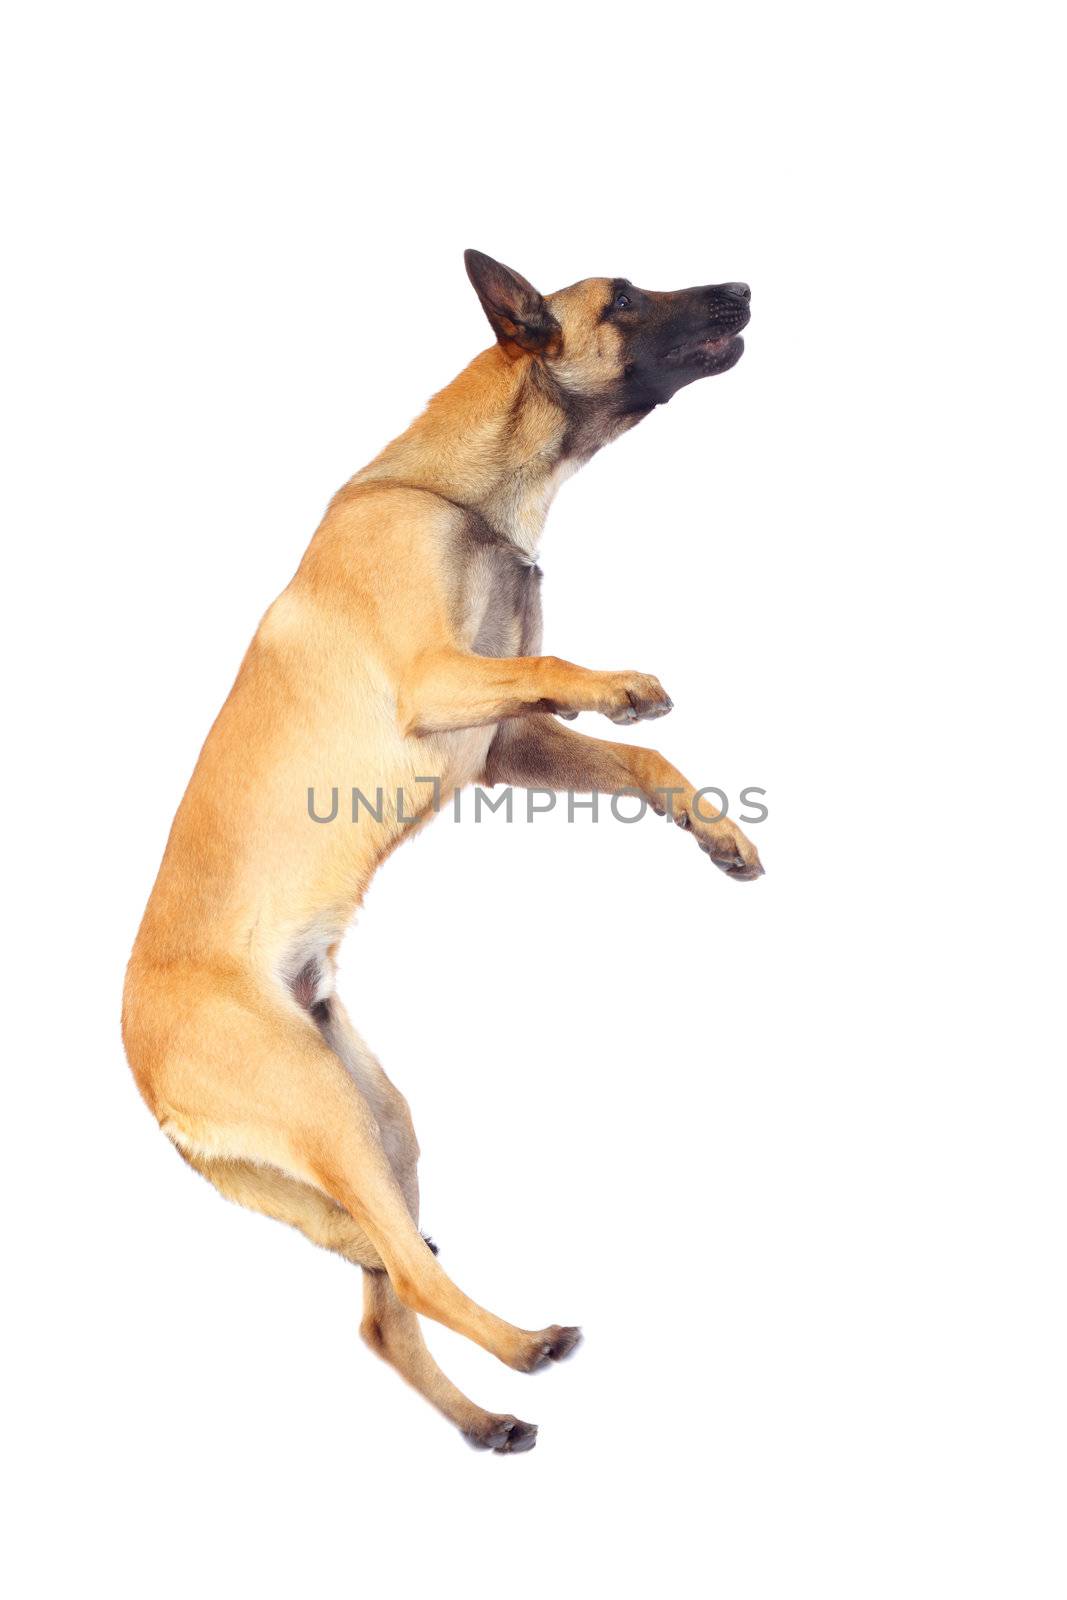 belgian shepherd dog jumping against white background